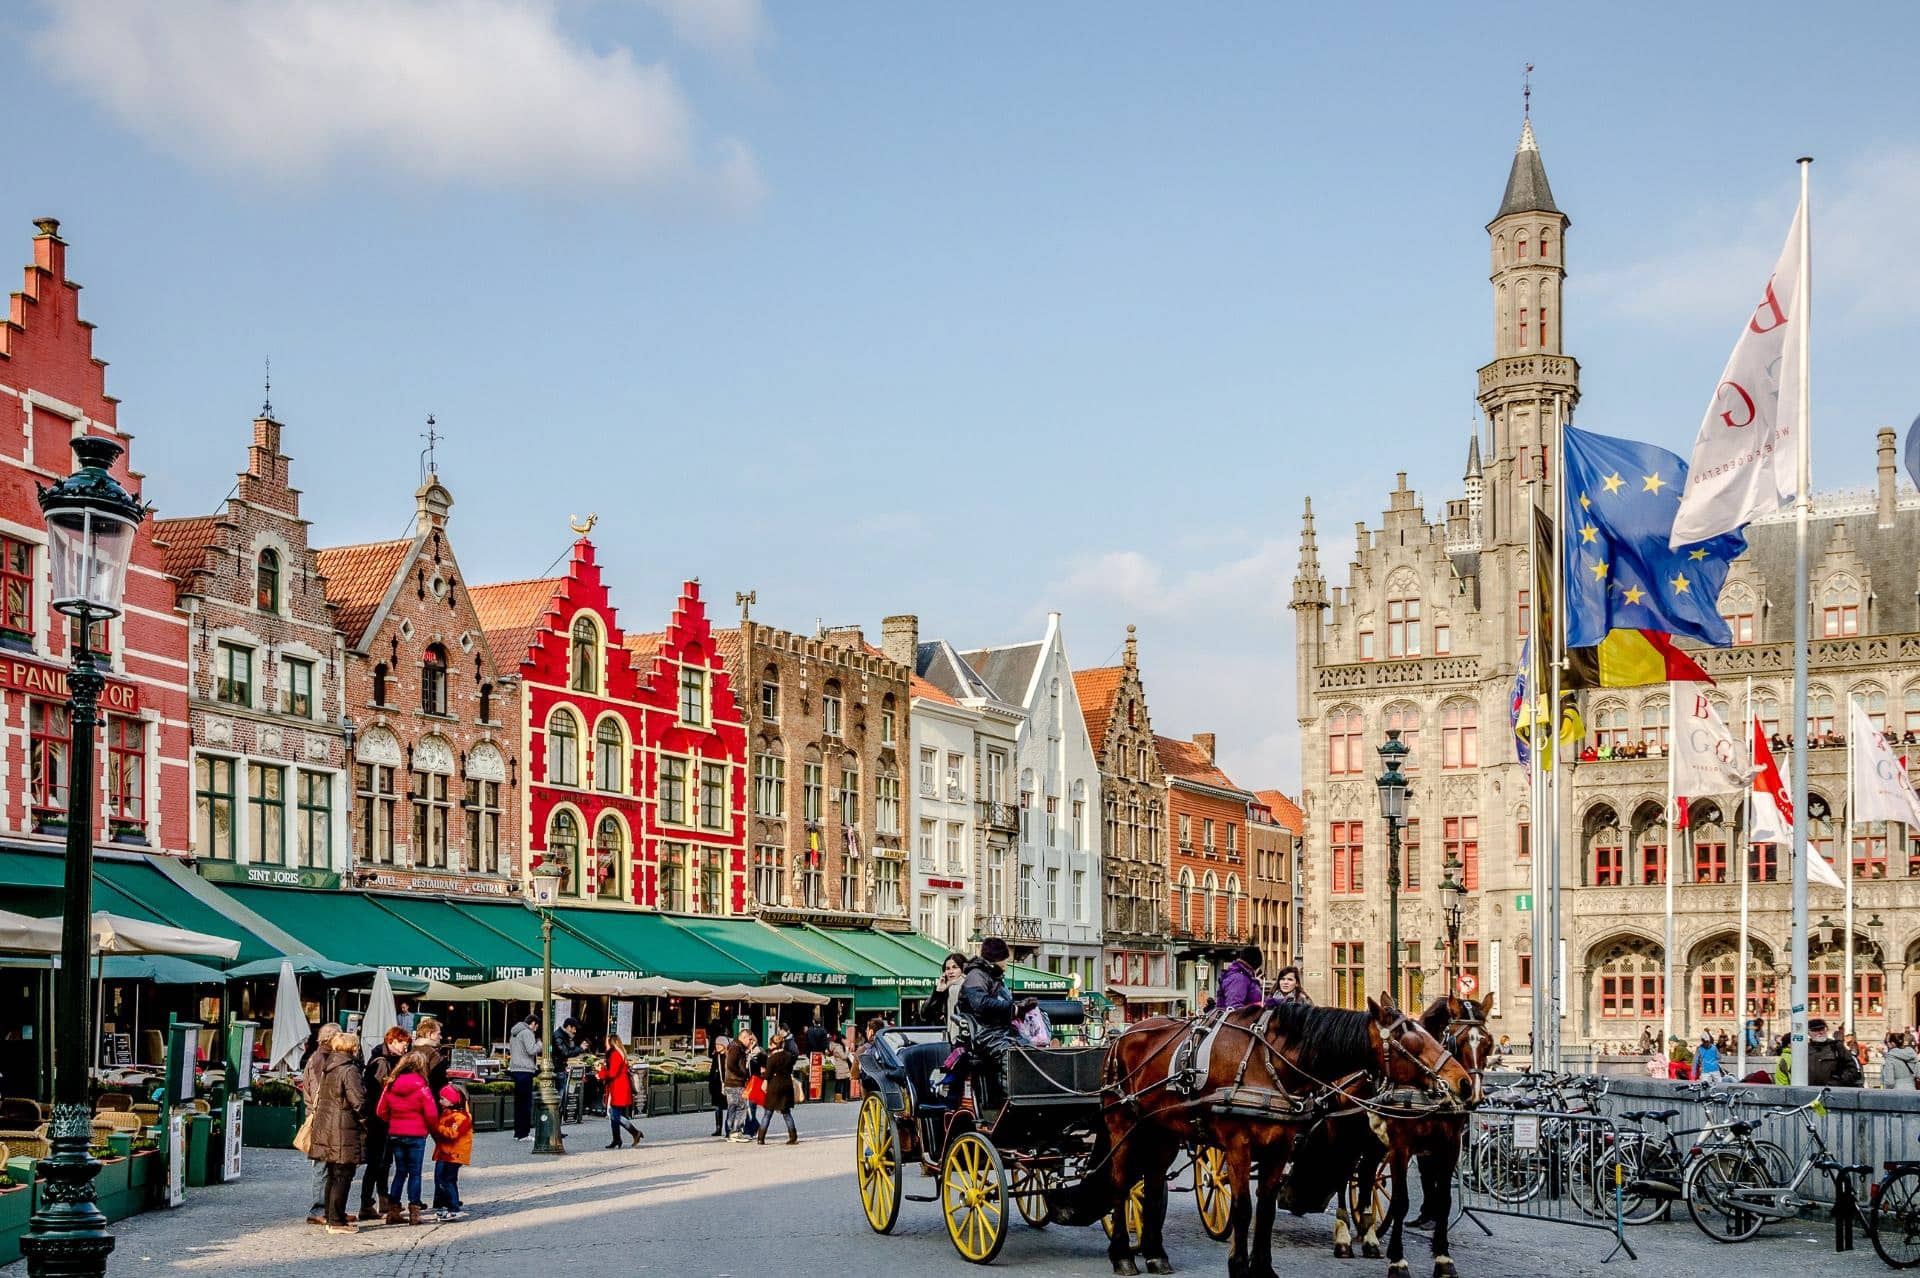 Bruges (ou Brugge) est depuis longtemps considérée comme l'une des plus grandes villes du monde. En fait, la ville entière a été reconnue comme un site du patrimoine mondial par l'UNESCO. Pendant votre séjour à Bruges, vous pourrez explorer les sites locaux tels que la place de Bruges (à voir absolument) et découvrir des siècles d'architecture à quelques pas de votre hôtel de Bruges. Qui peut oublier, pendant votre séjour à Bruges, de visiter les brasseries locales ? Profitez des visites quotidiennes et découvrez les bières de spécialité lors d'une dégustation. Réservez toujours directement votre hôtel à Bruges pour bénéficier de notre garantie du meilleur tarif et d'un accès exclusif à notre club de fidélité. Réservez maintenant !